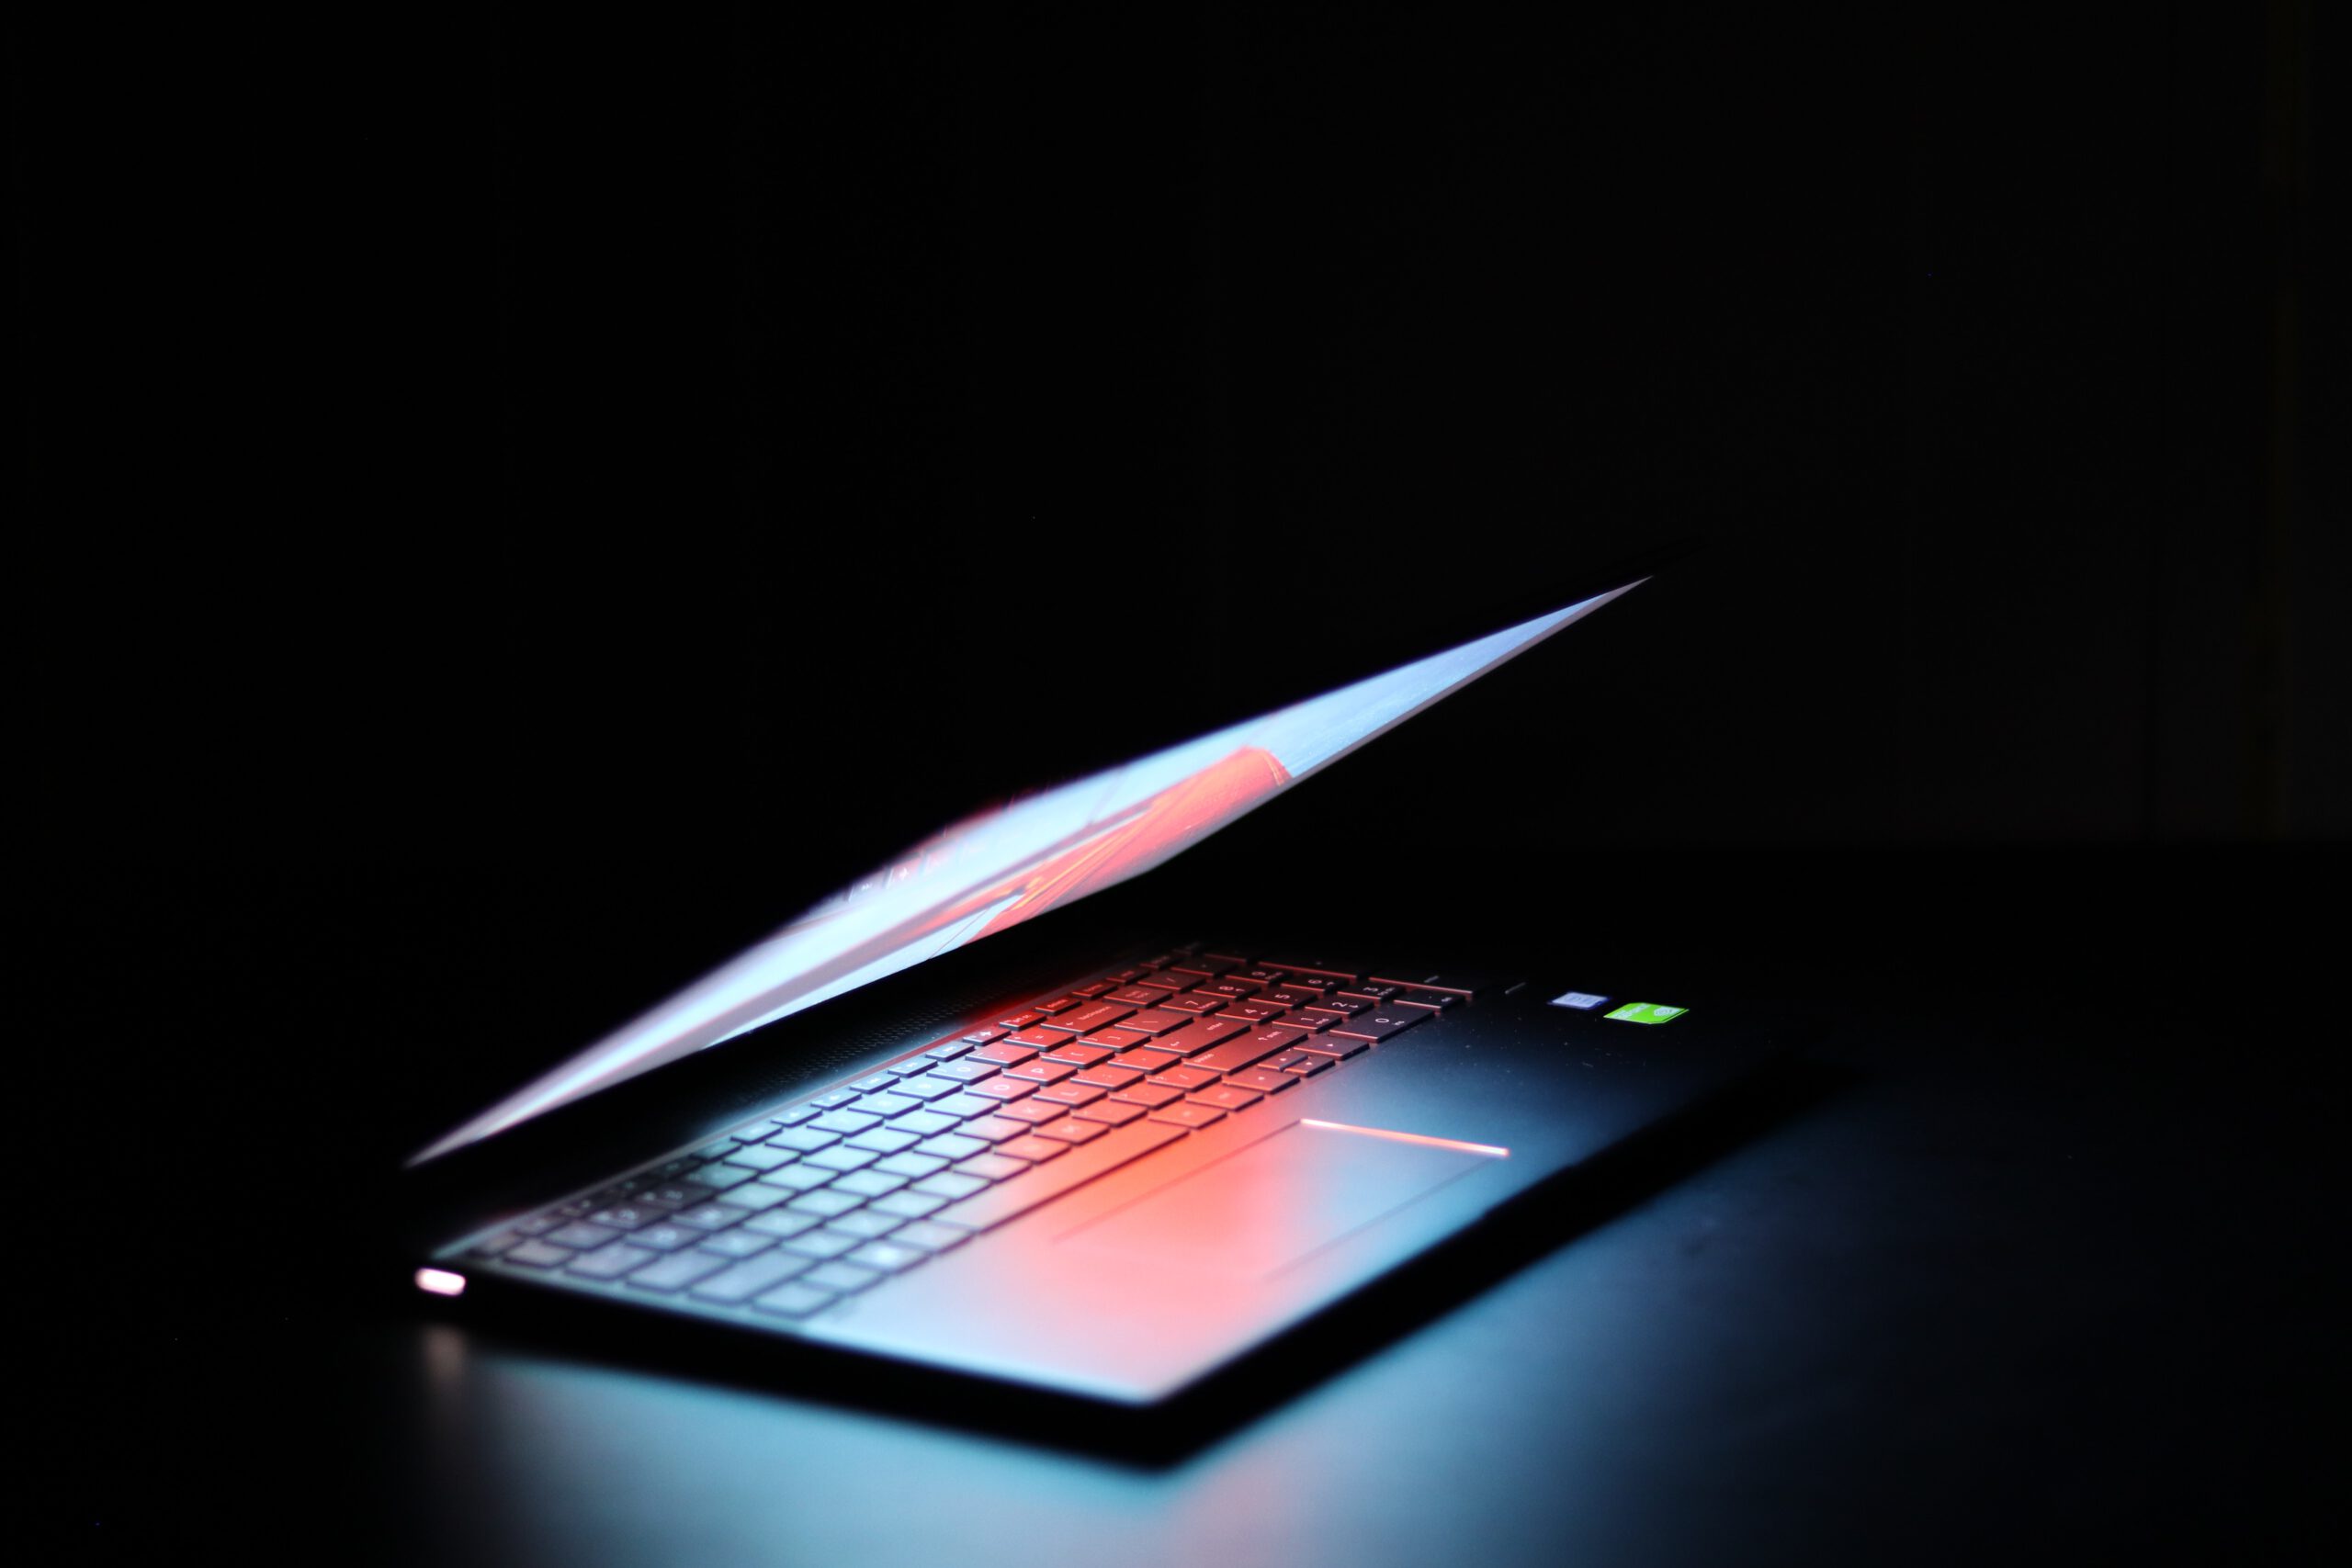 KI_Park Ein Laptop mit Fähigkeiten zur Künstlichen Intelligenz leuchtet im Dunkeln.